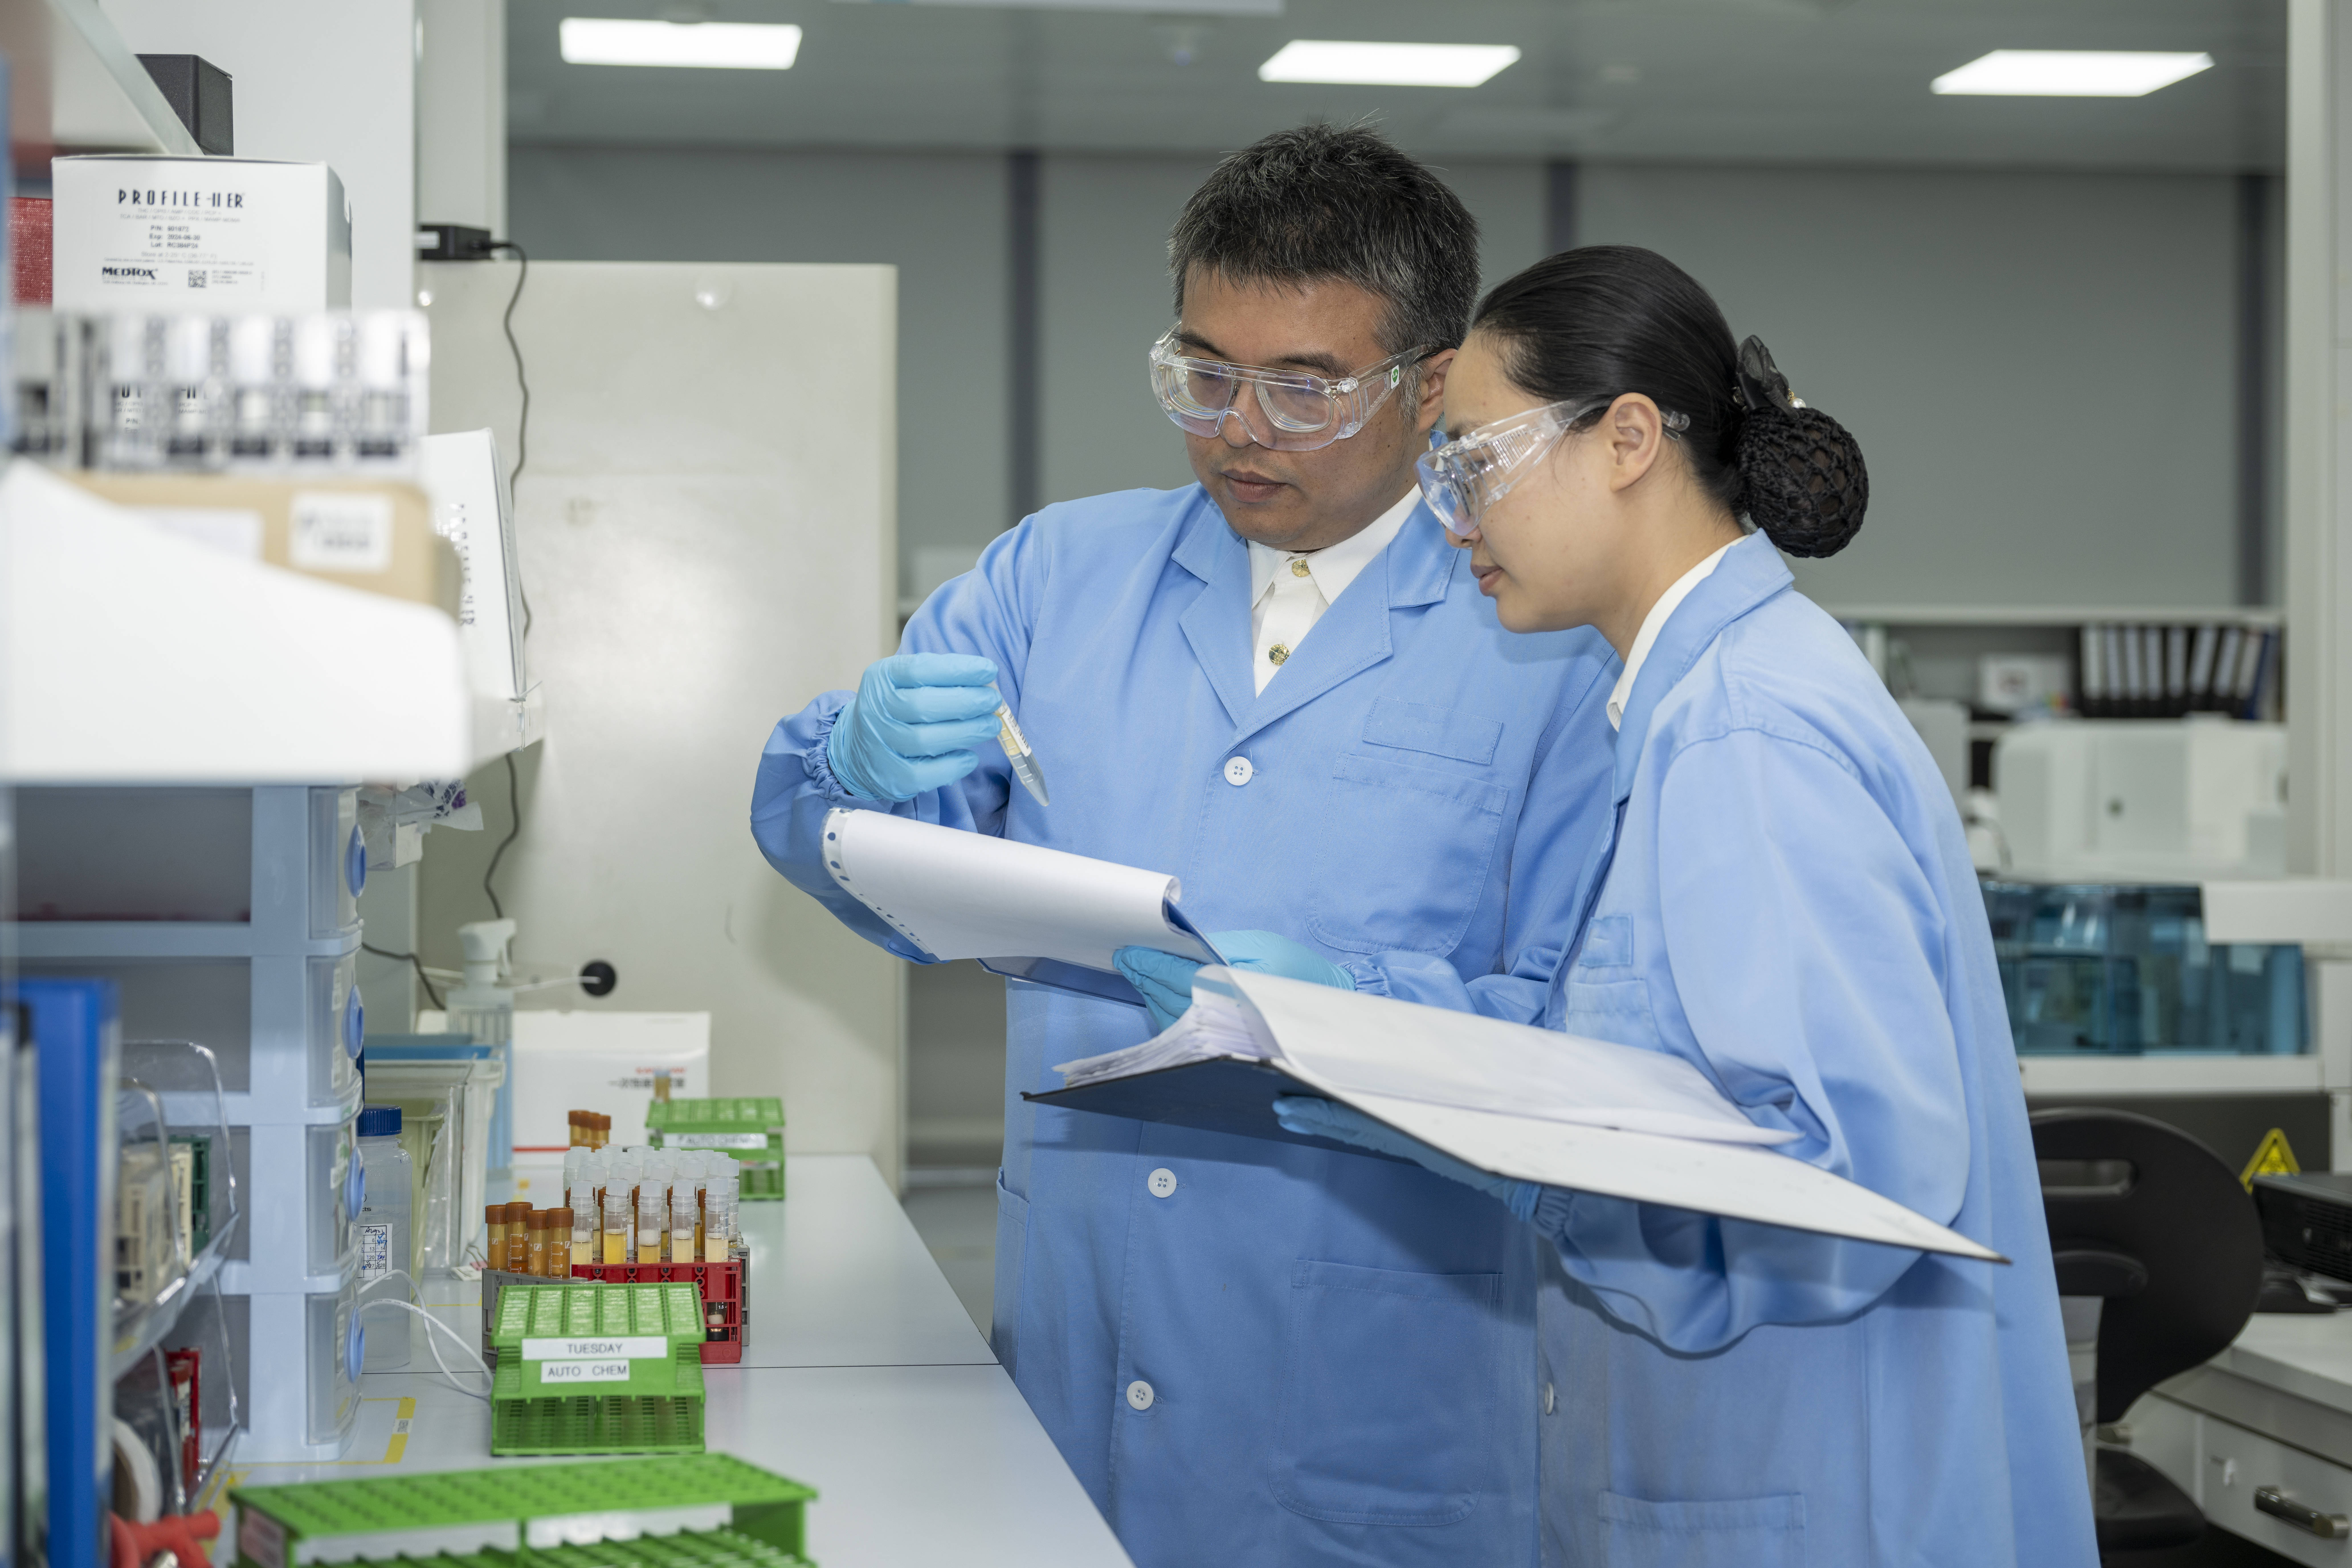 上海首创生物医药进口研发用物品白名单机制,已覆盖50个品项